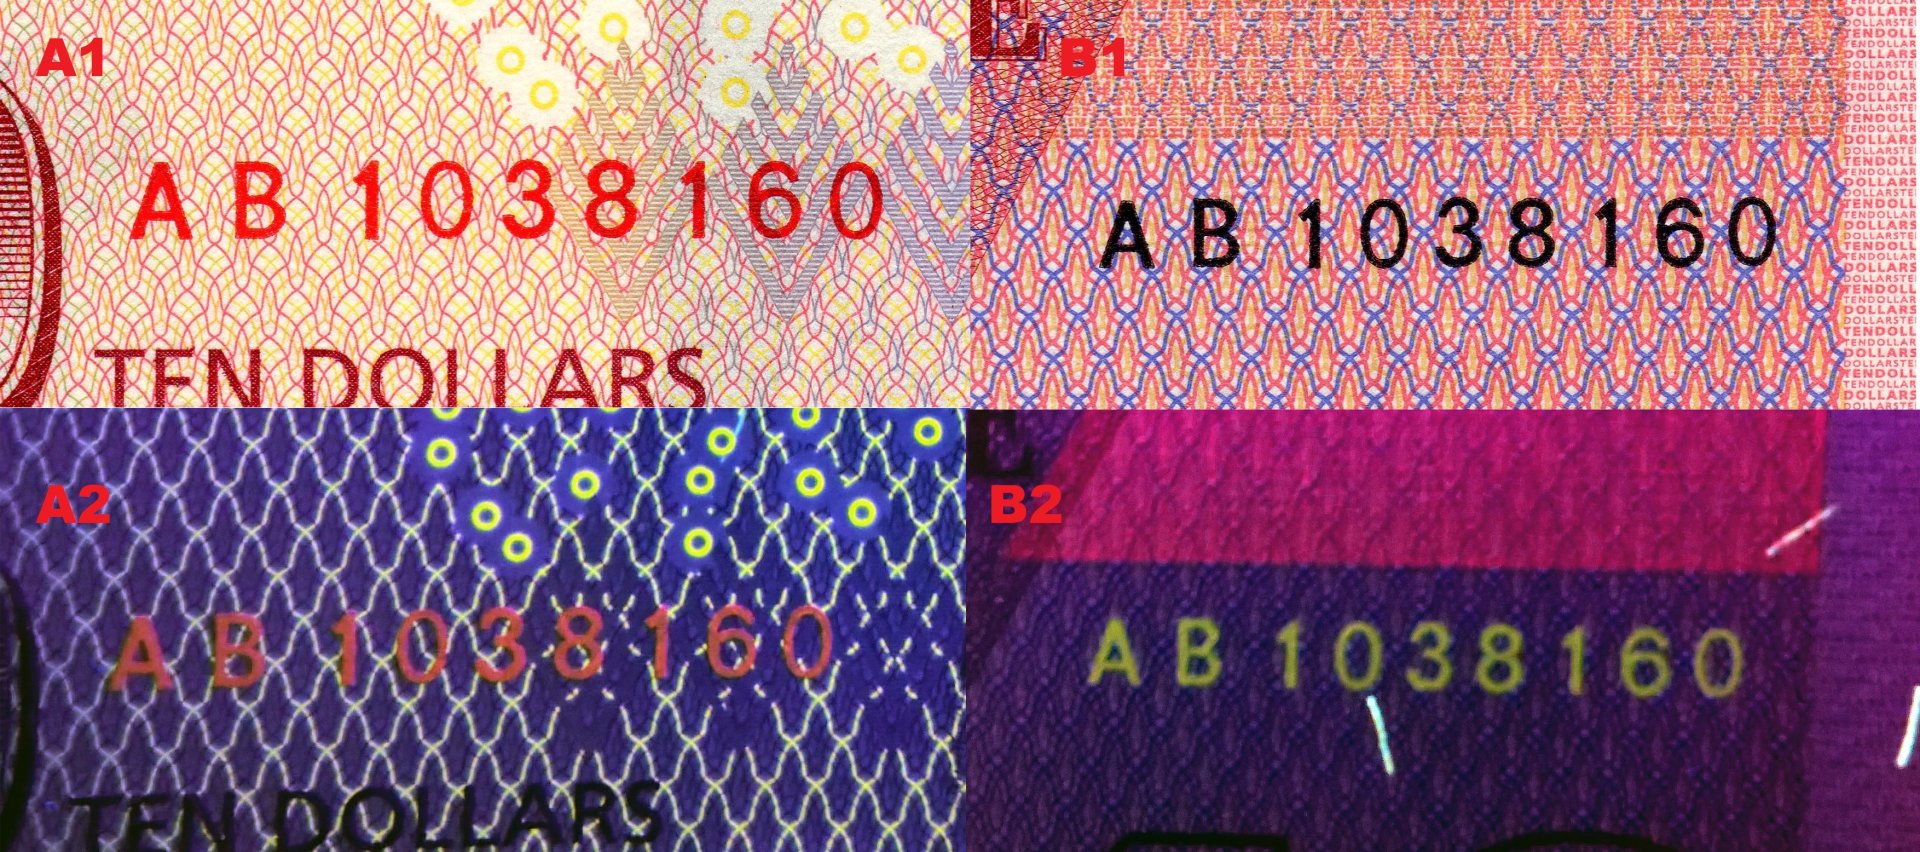 Obr. 7 A1) Sériové číslo vlevo dole na reverzu bankovky P#103. A2) Totéž číslo pod UV zářením. B1) Sériové číslo vpravo nahoře na reverzu bankovky P#103. B2) Totéž číslo pod UV zářením.